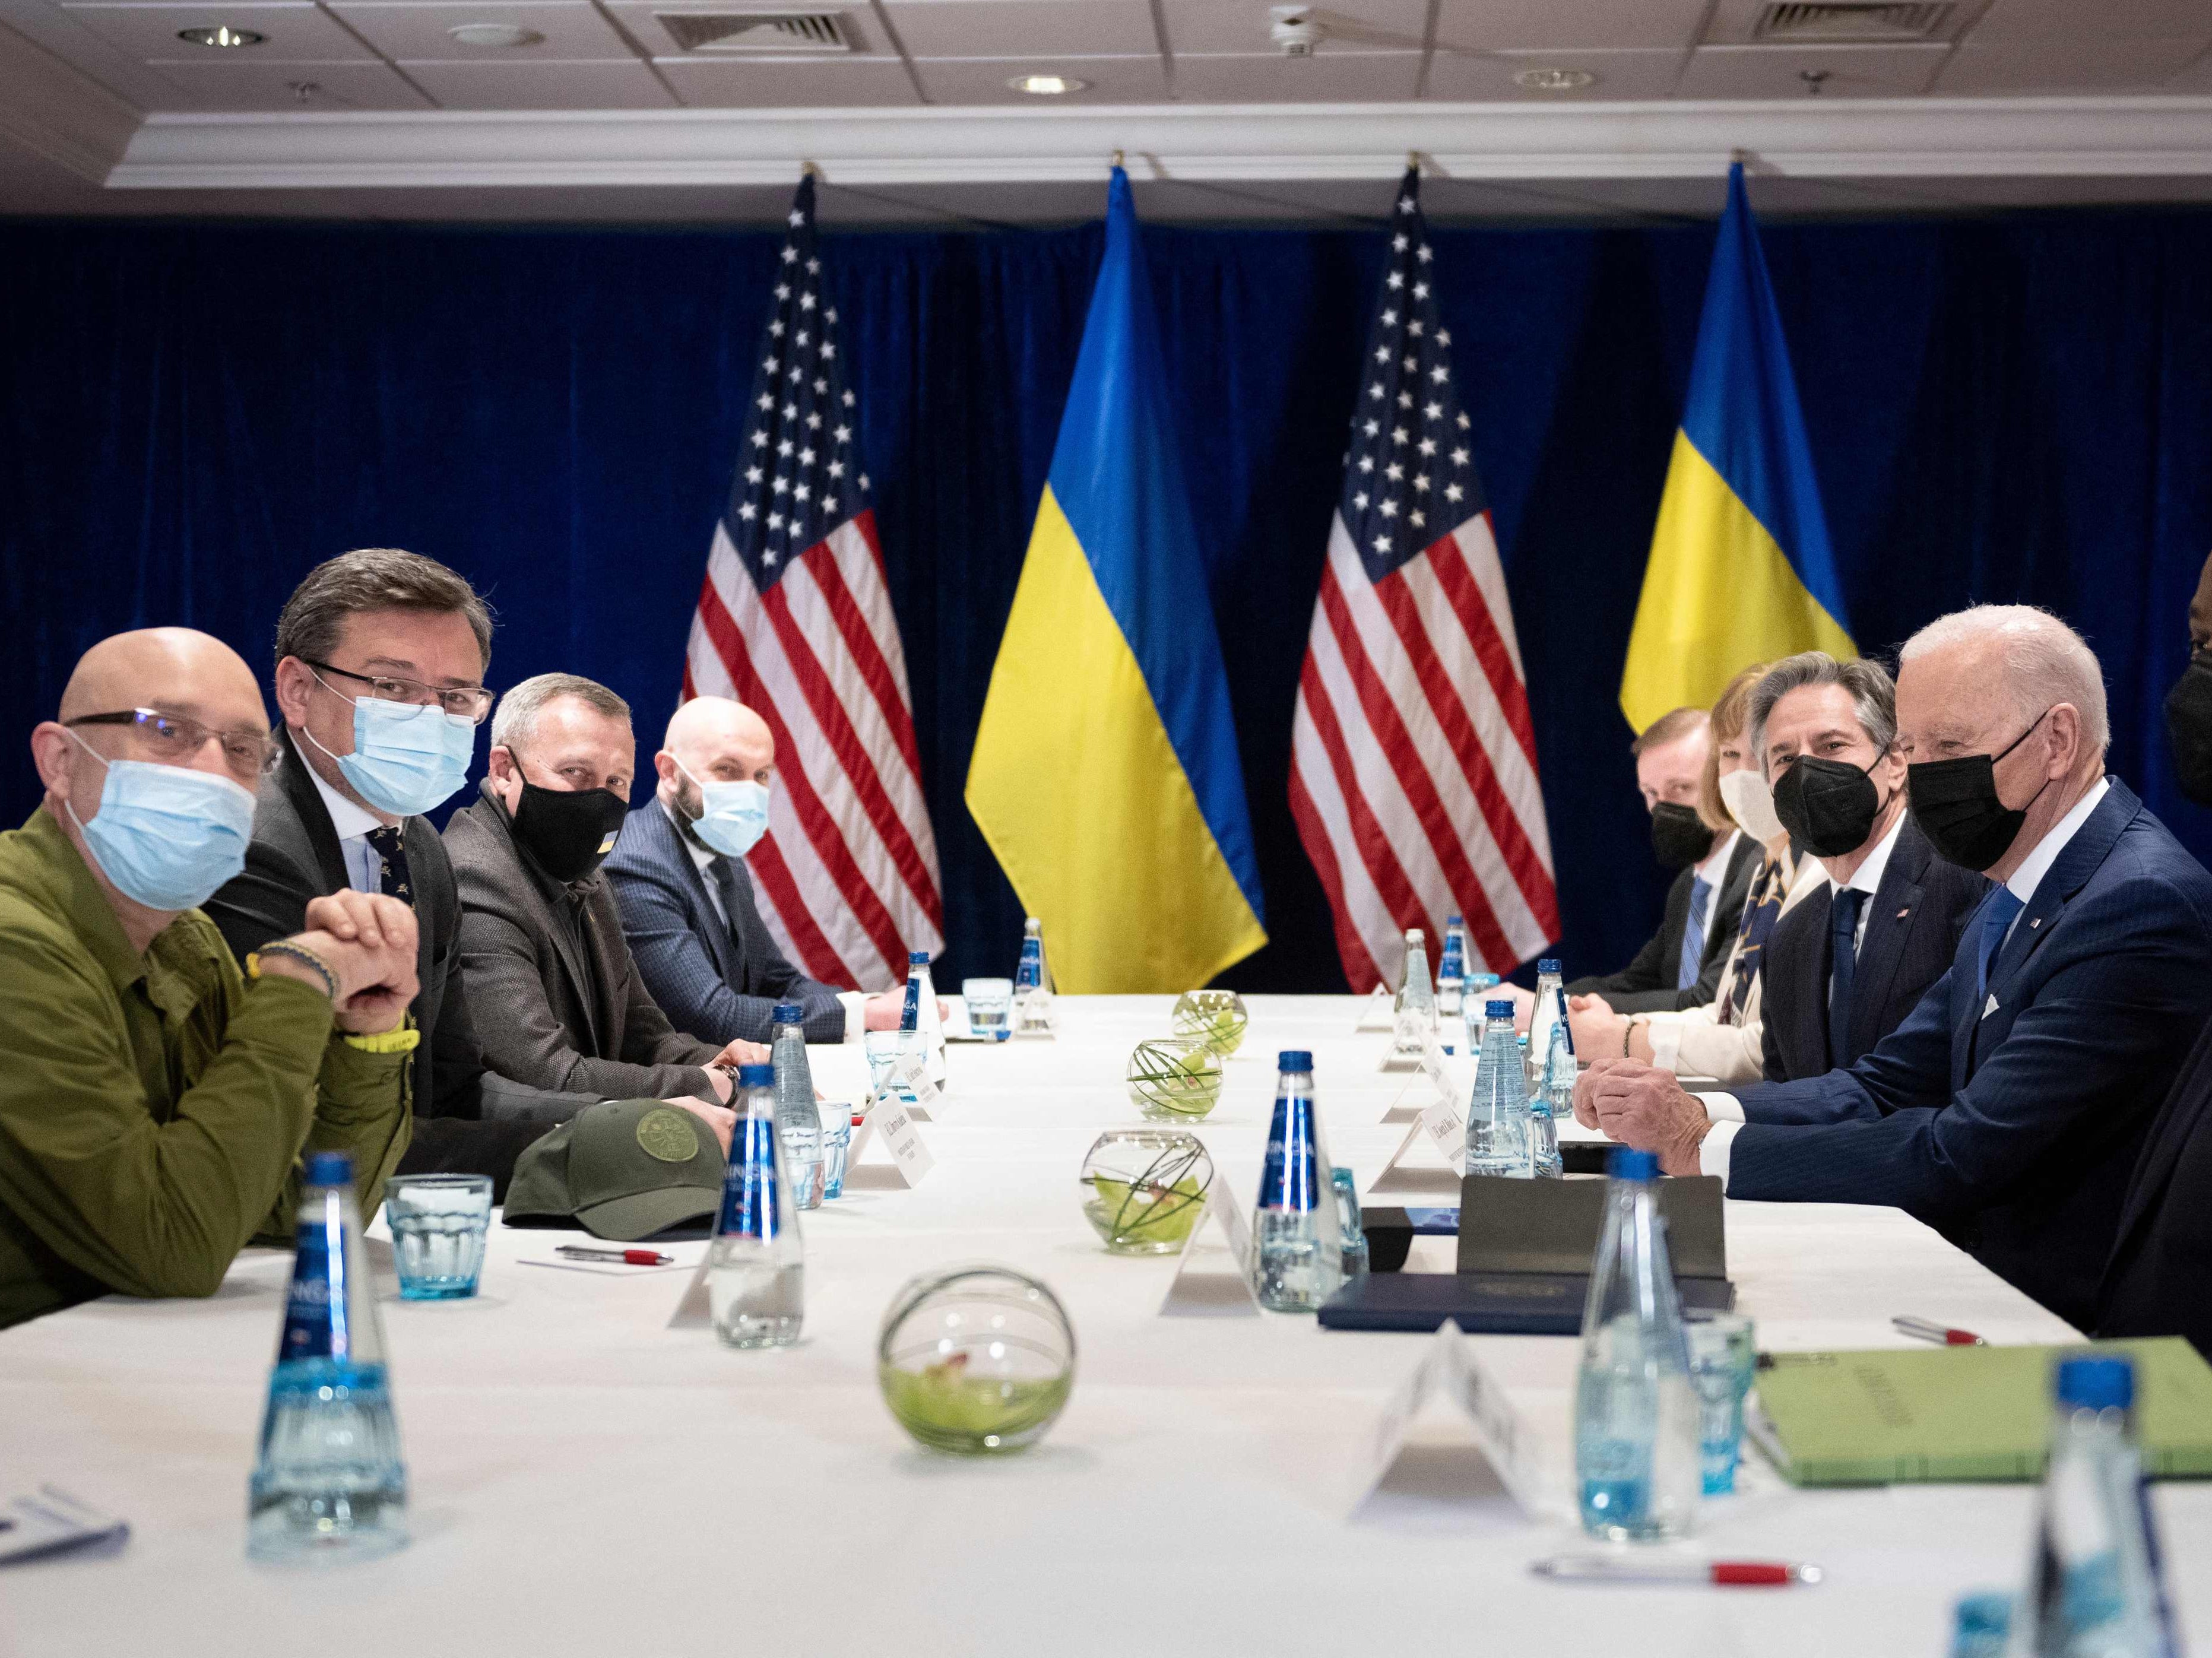 El presidente Biden (derecha) y el secretario de Estado de EE.UU. Antony Blinken (segundo a la derecha) se reúnen con el ministro de Asuntos Exteriores ucraniano Dmytro Kuleba (segundo a la izquierda) y el ministro de Defensa Oleksii Reznikov (izquierda) en Varsovia